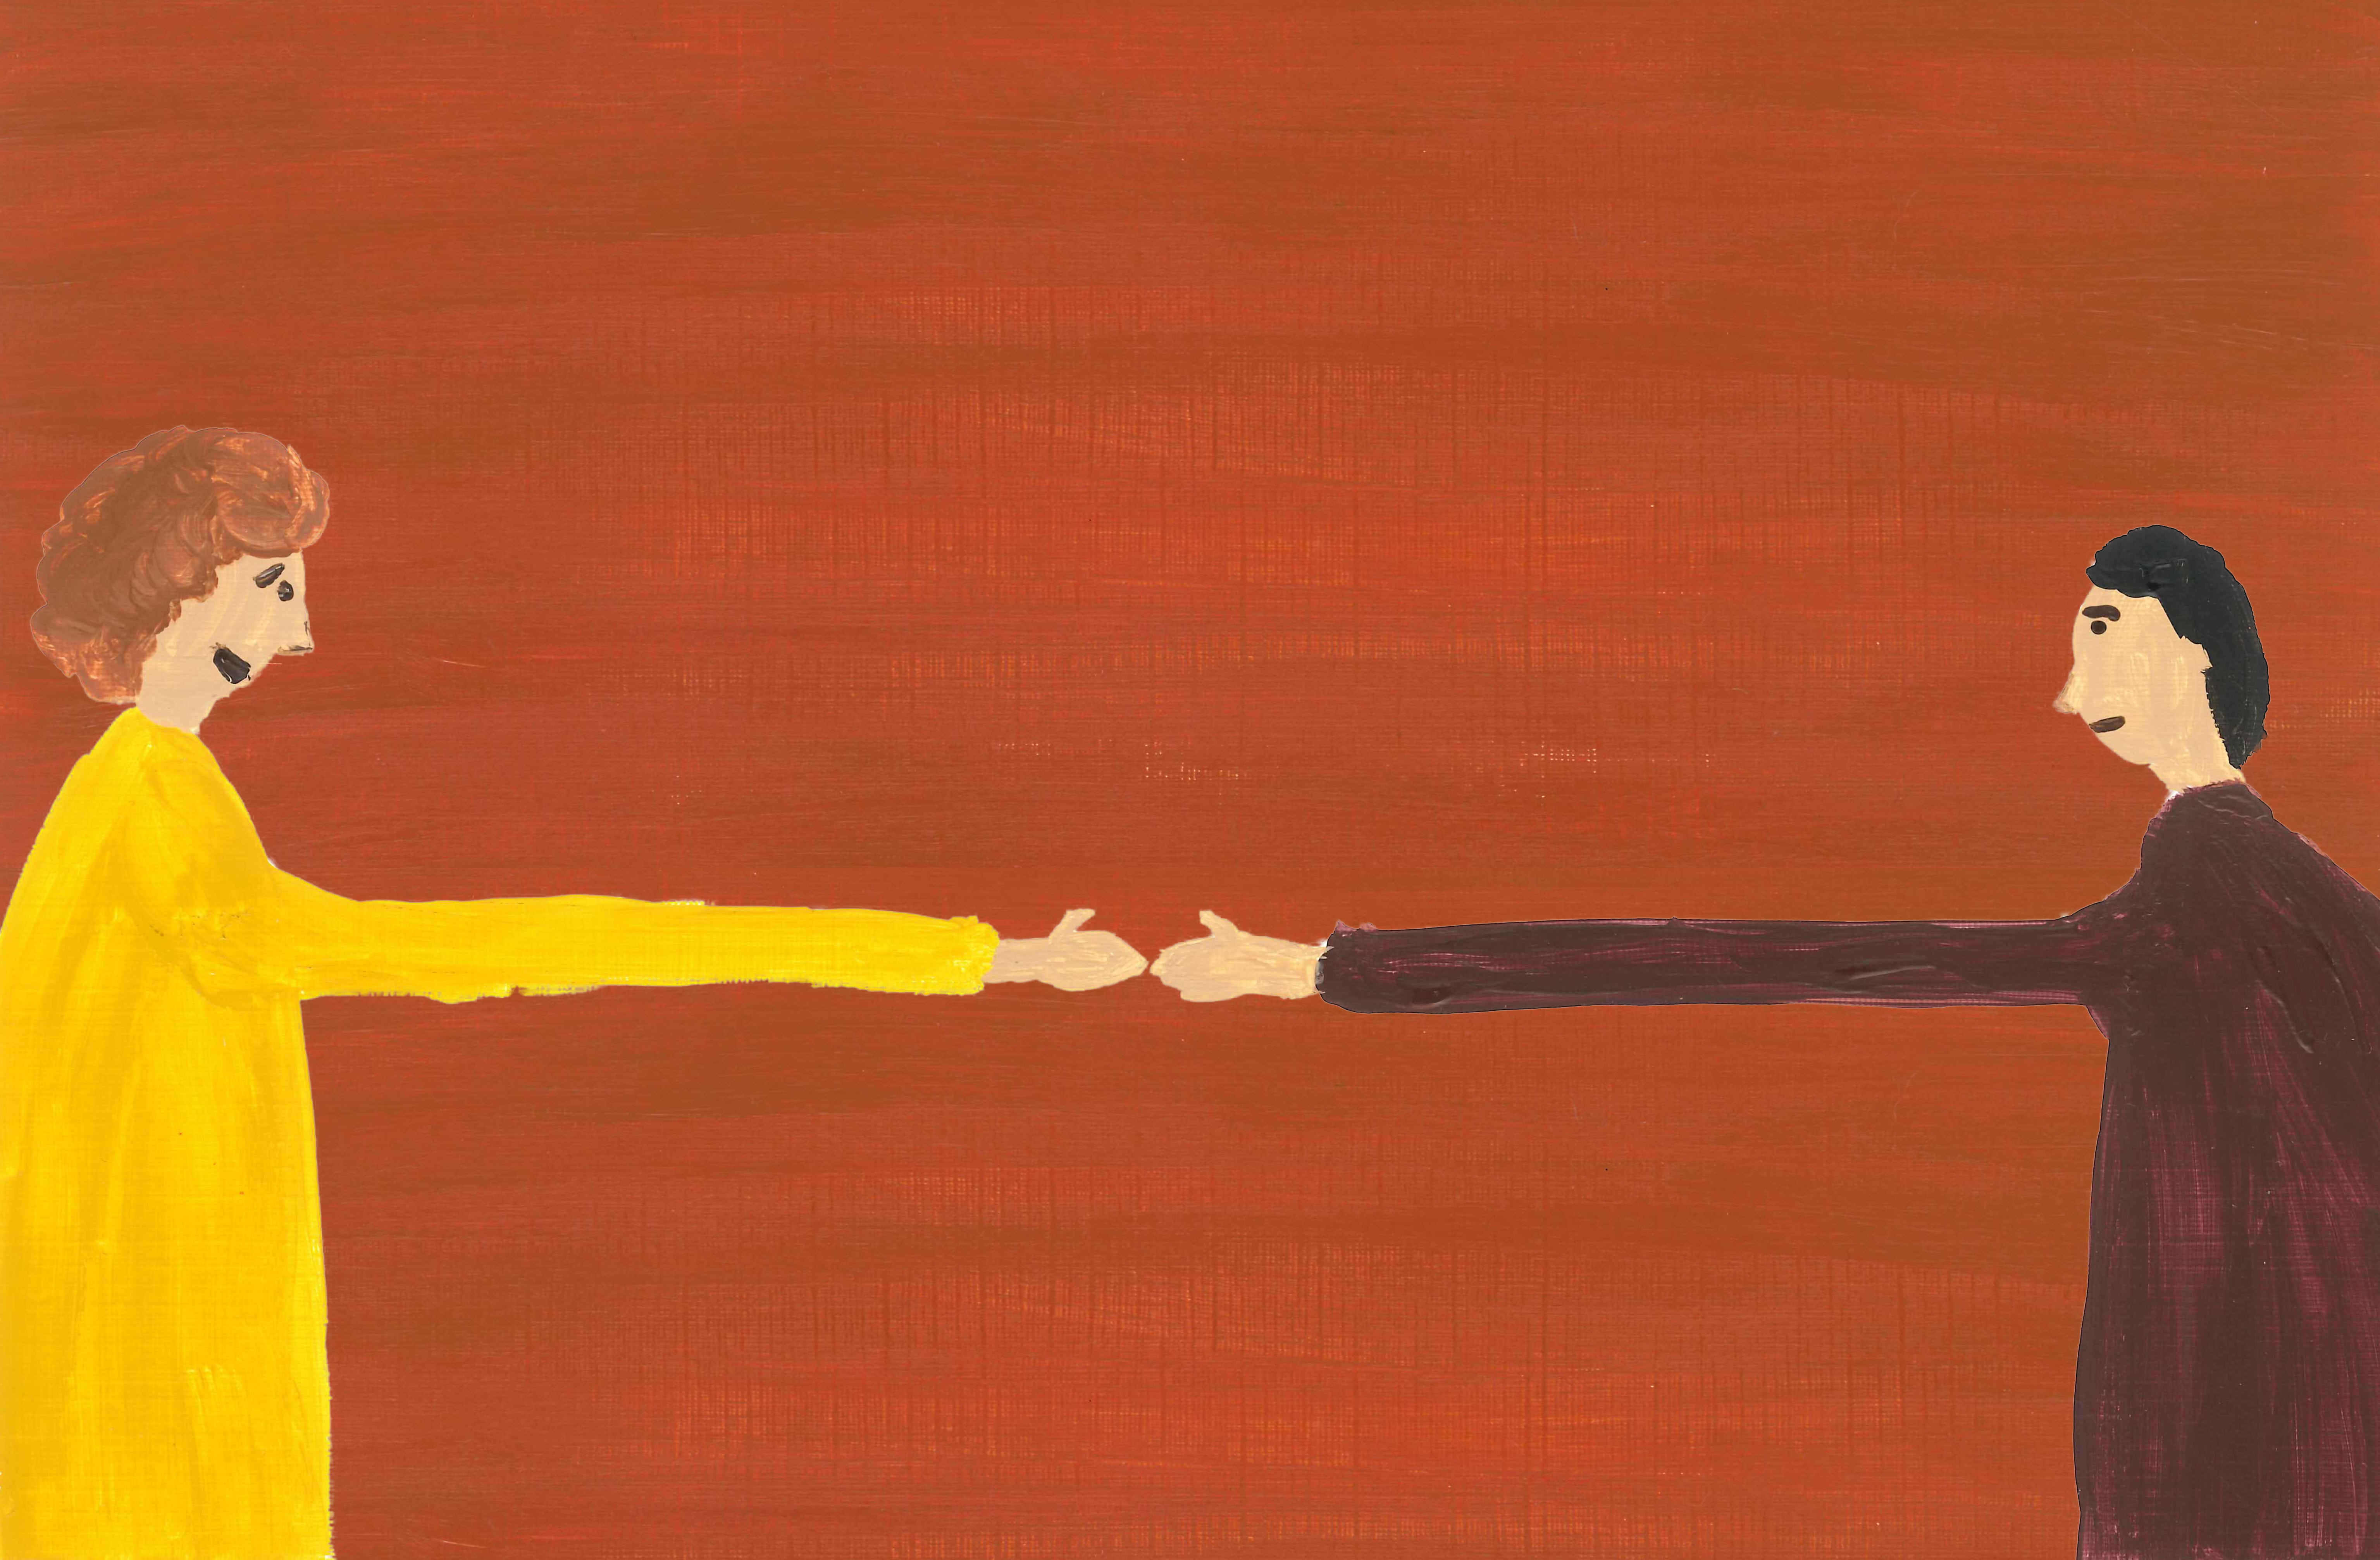 Twee geschilderde figuren reiken elkaar de hand op een oranje achtergrond